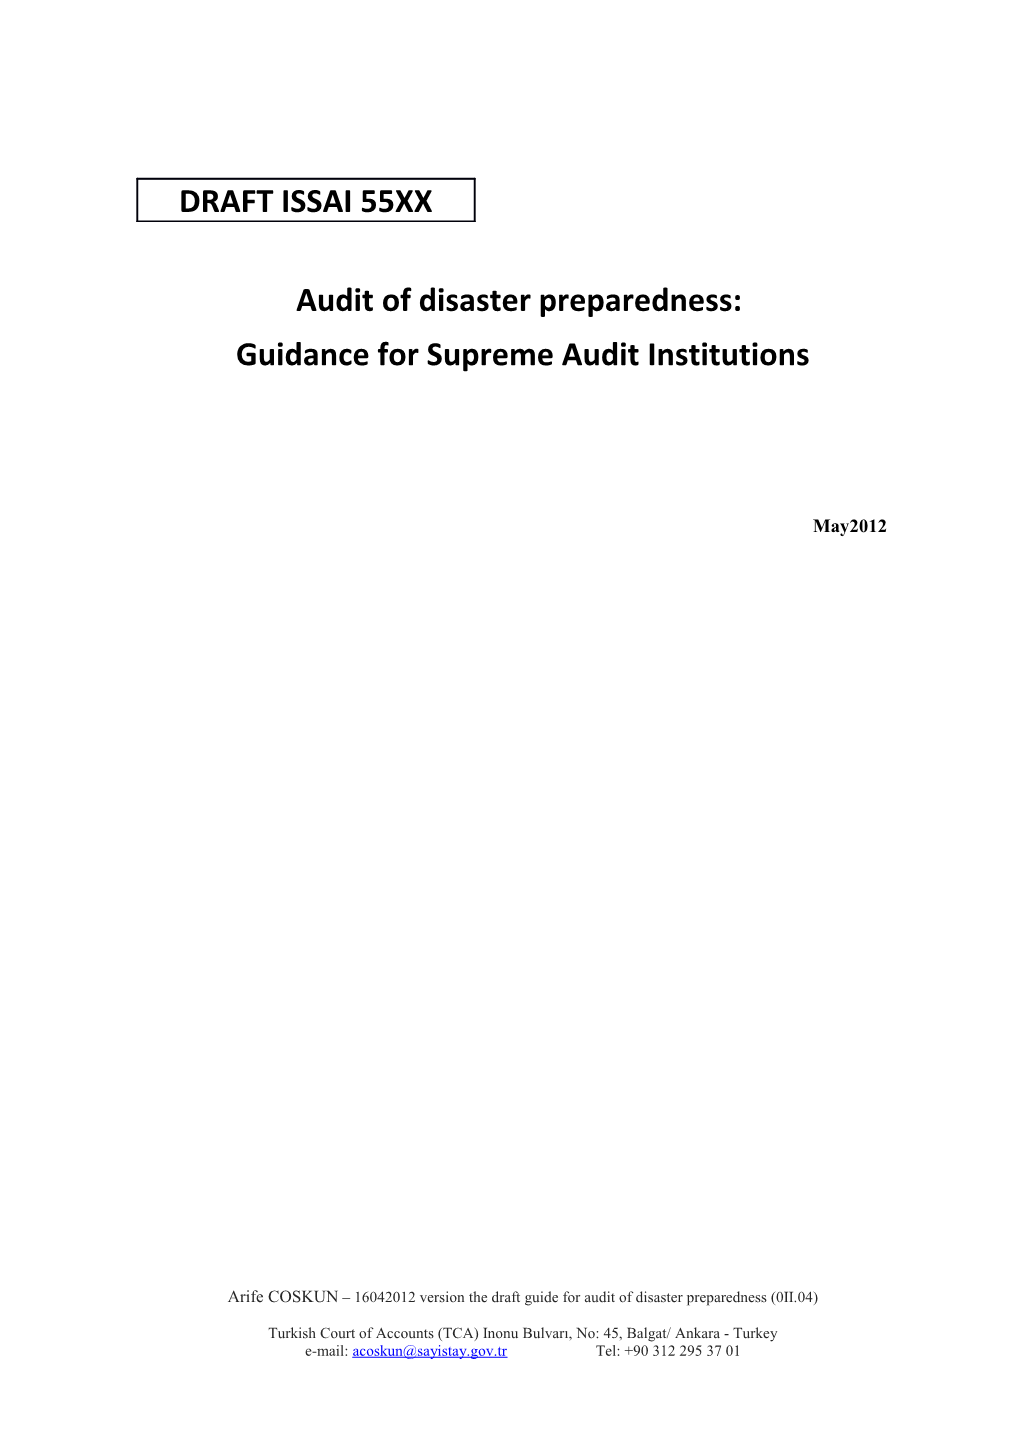 THE DRAFT PROGRAM for AUDIT of DISASTER PREPAREDNESS